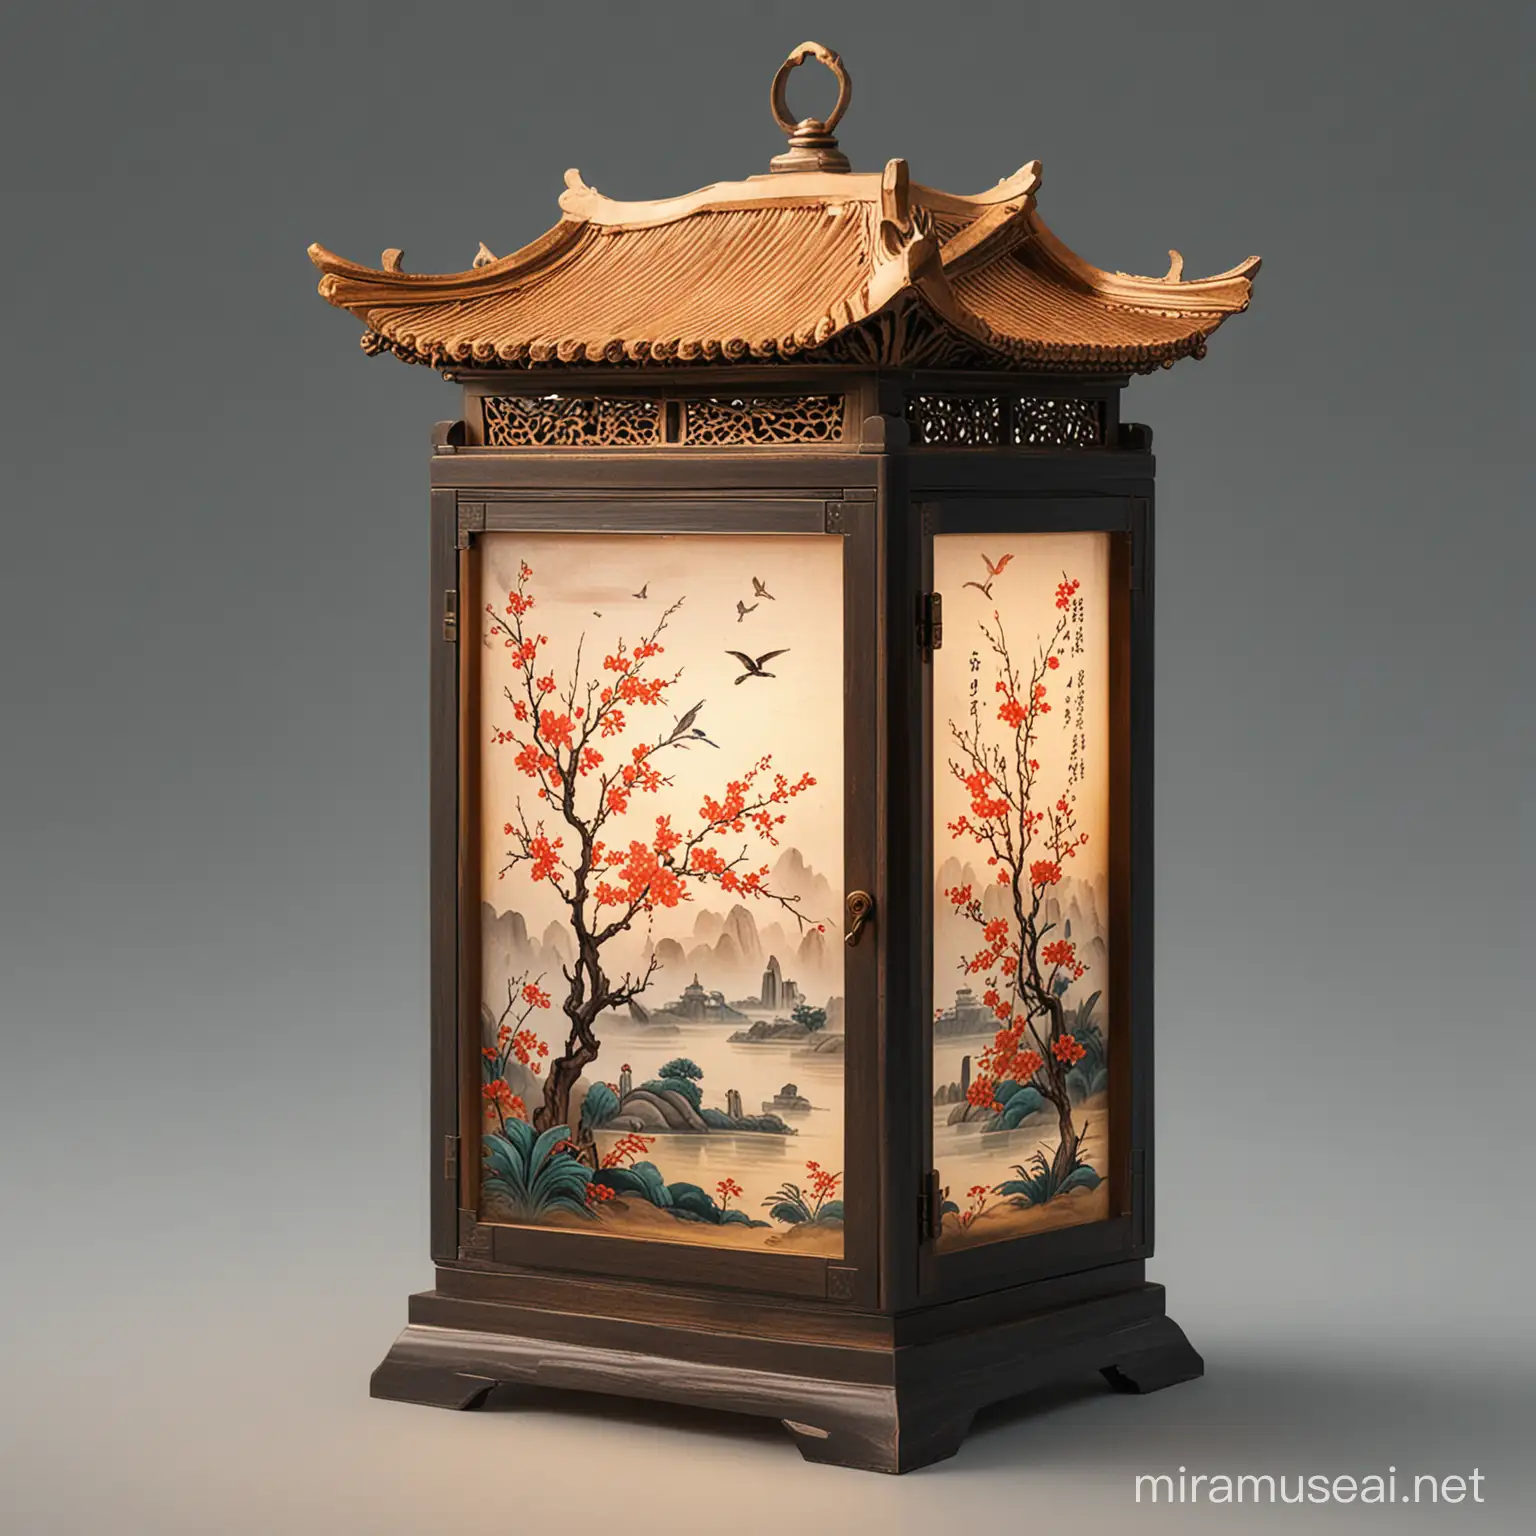 a lamp box, chinese style